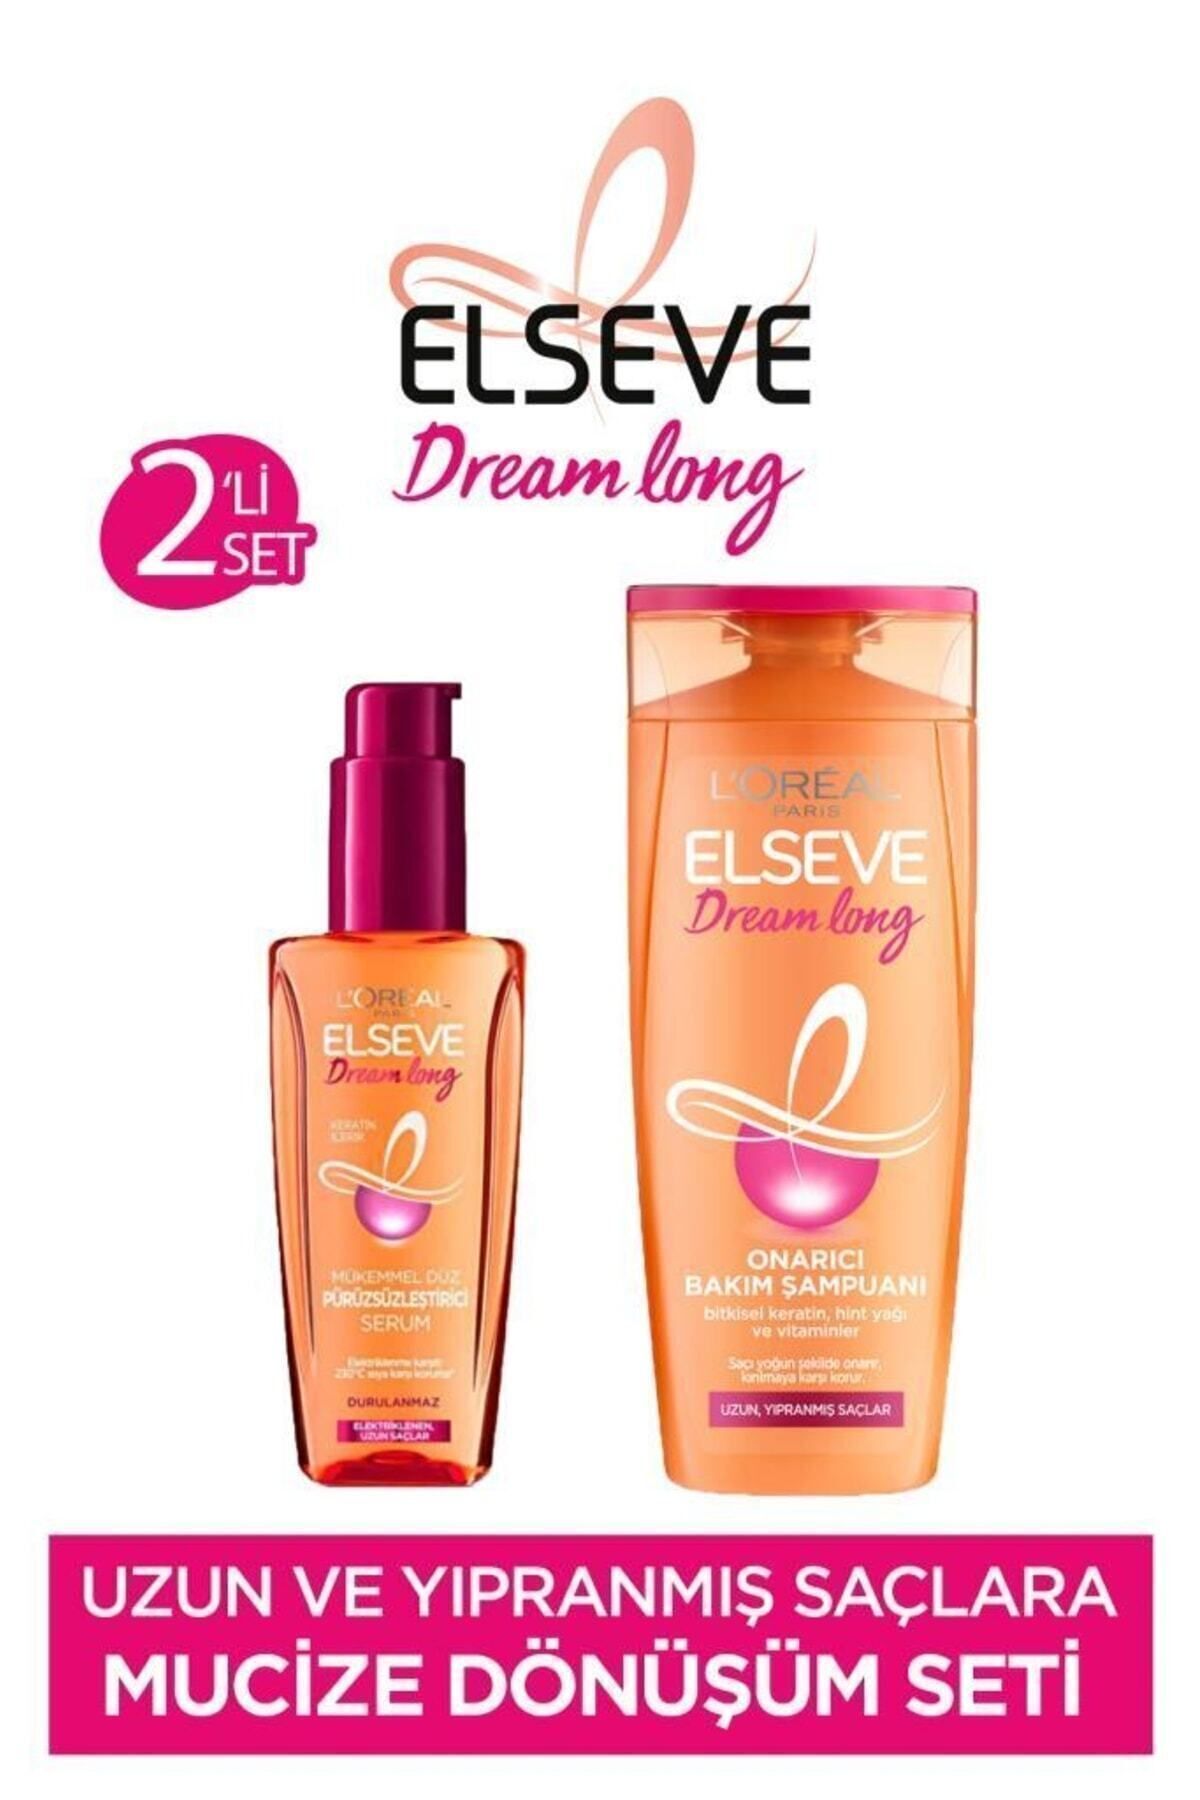 Elseve Dream Long Mükemmel Düz Pürüzsüzleştirici Serum & Onarıcı Bakım Şampuanı 390 Ml